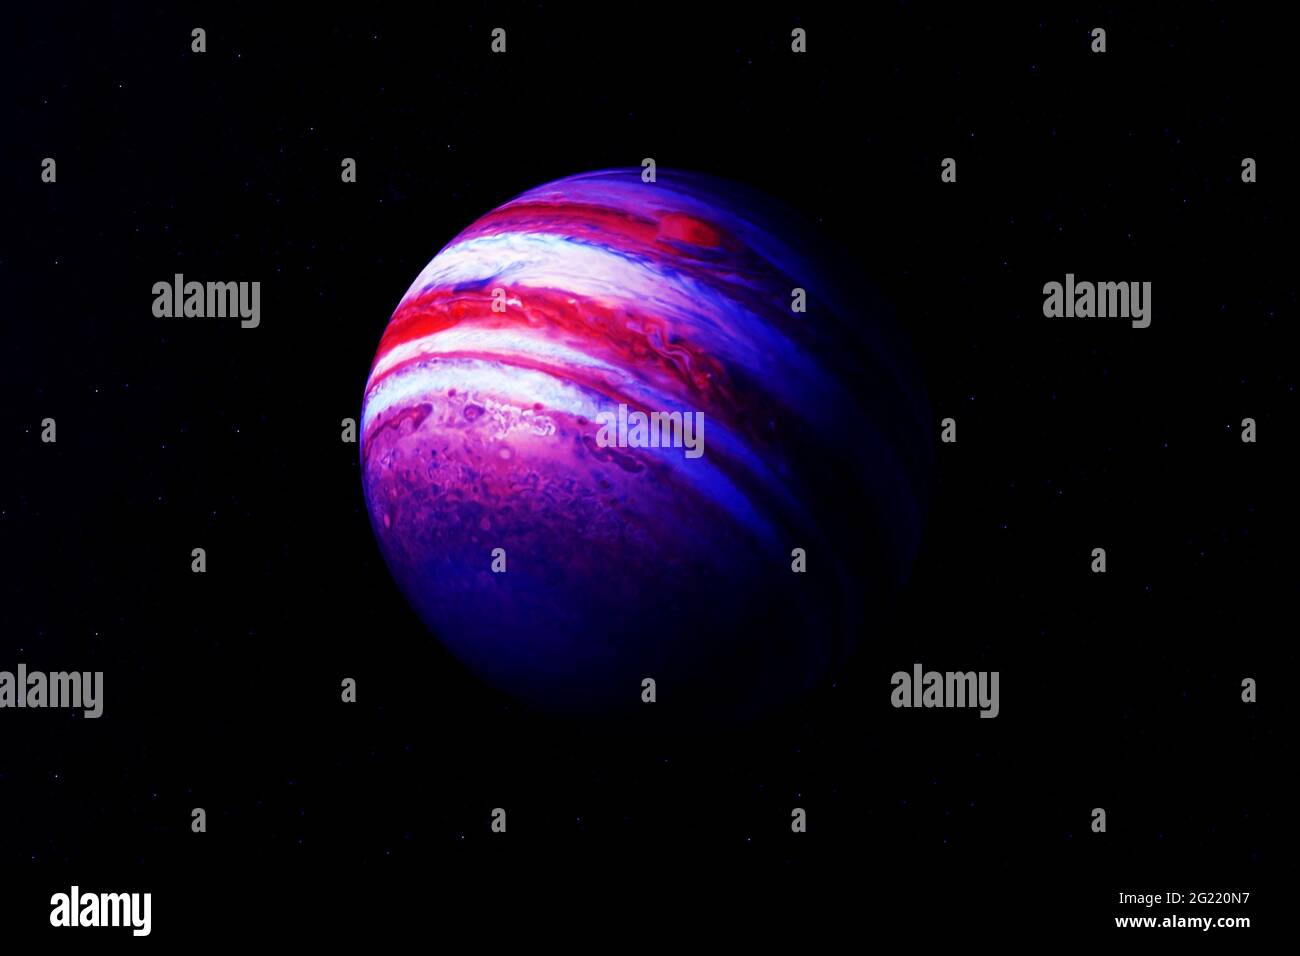 Hành tinh Jupiter là một điều kỳ diệu và ngắm nhìn nó trên nền tối thật tuyệt vời. Nếu bạn yêu thích vũ trụ và muốn tìm hiểu thêm về hành tinh này, hãy xem ảnh liên quan để thấy sự đẹp đẽ của nó. Những hình ảnh đầy sức mạnh và sự lớn lao của Jupiter chắc chắn sẽ không làm bạn thất vọng.